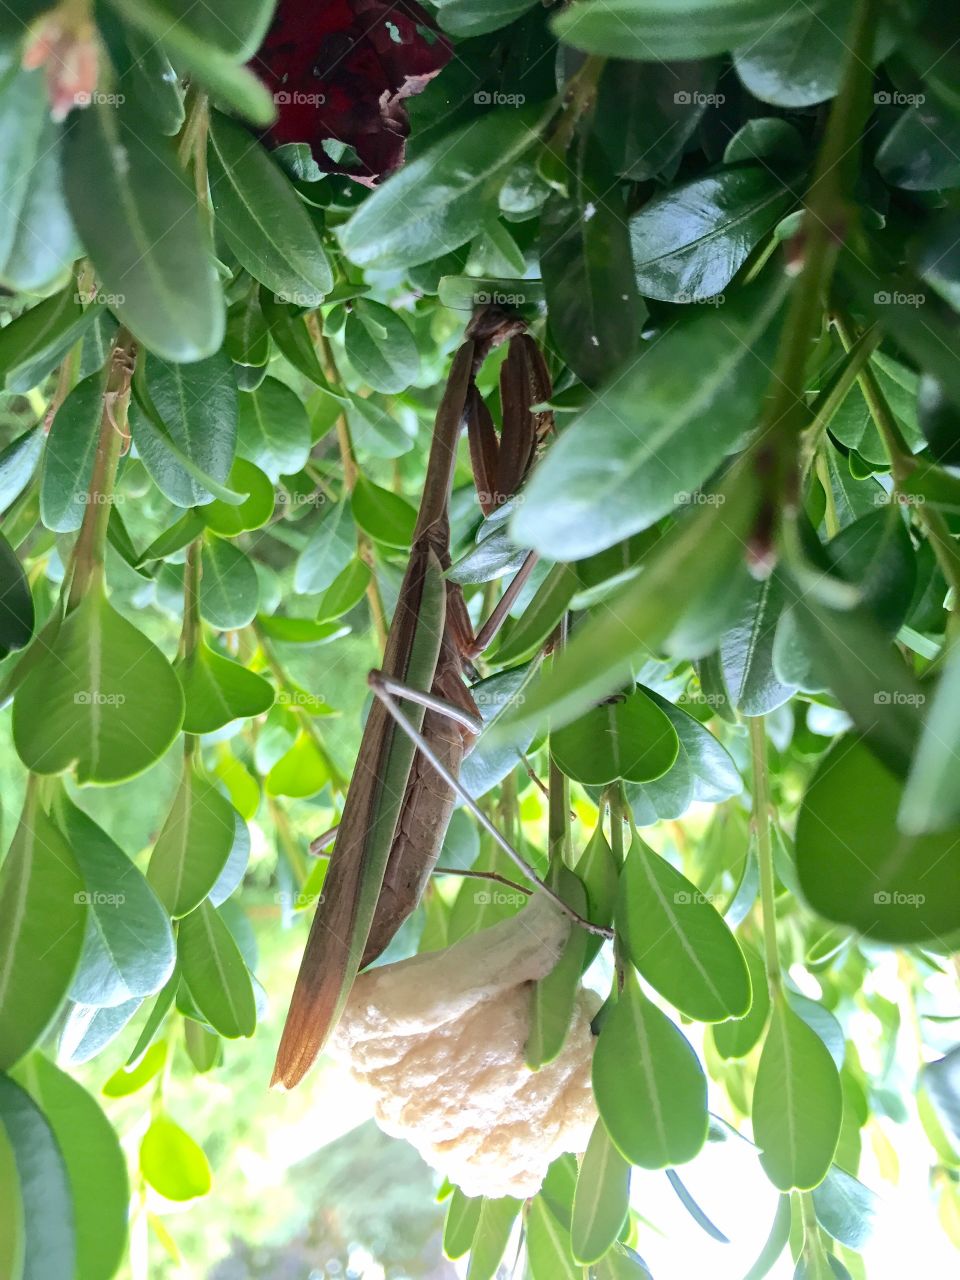 A praying mantis making its cocoon.